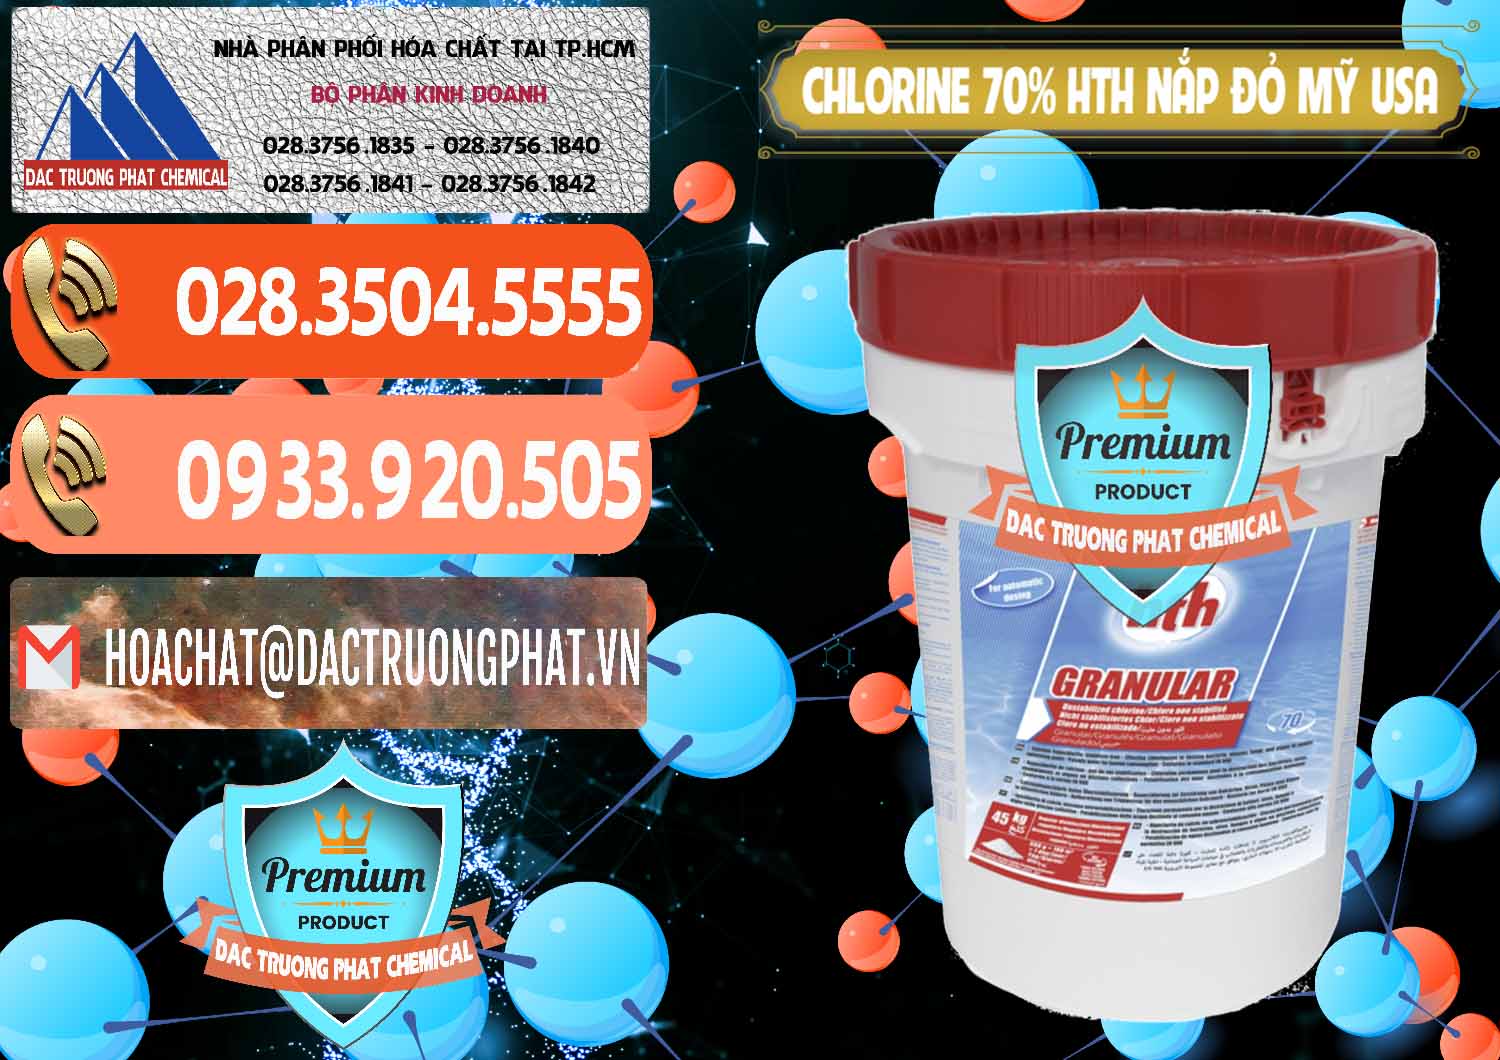 Cty bán _ phân phối Clorin – Chlorine 70% HTH Nắp Đỏ Mỹ Usa - 0244 - Cty cung cấp _ phân phối hóa chất tại TP.HCM - hoachatmientay.com